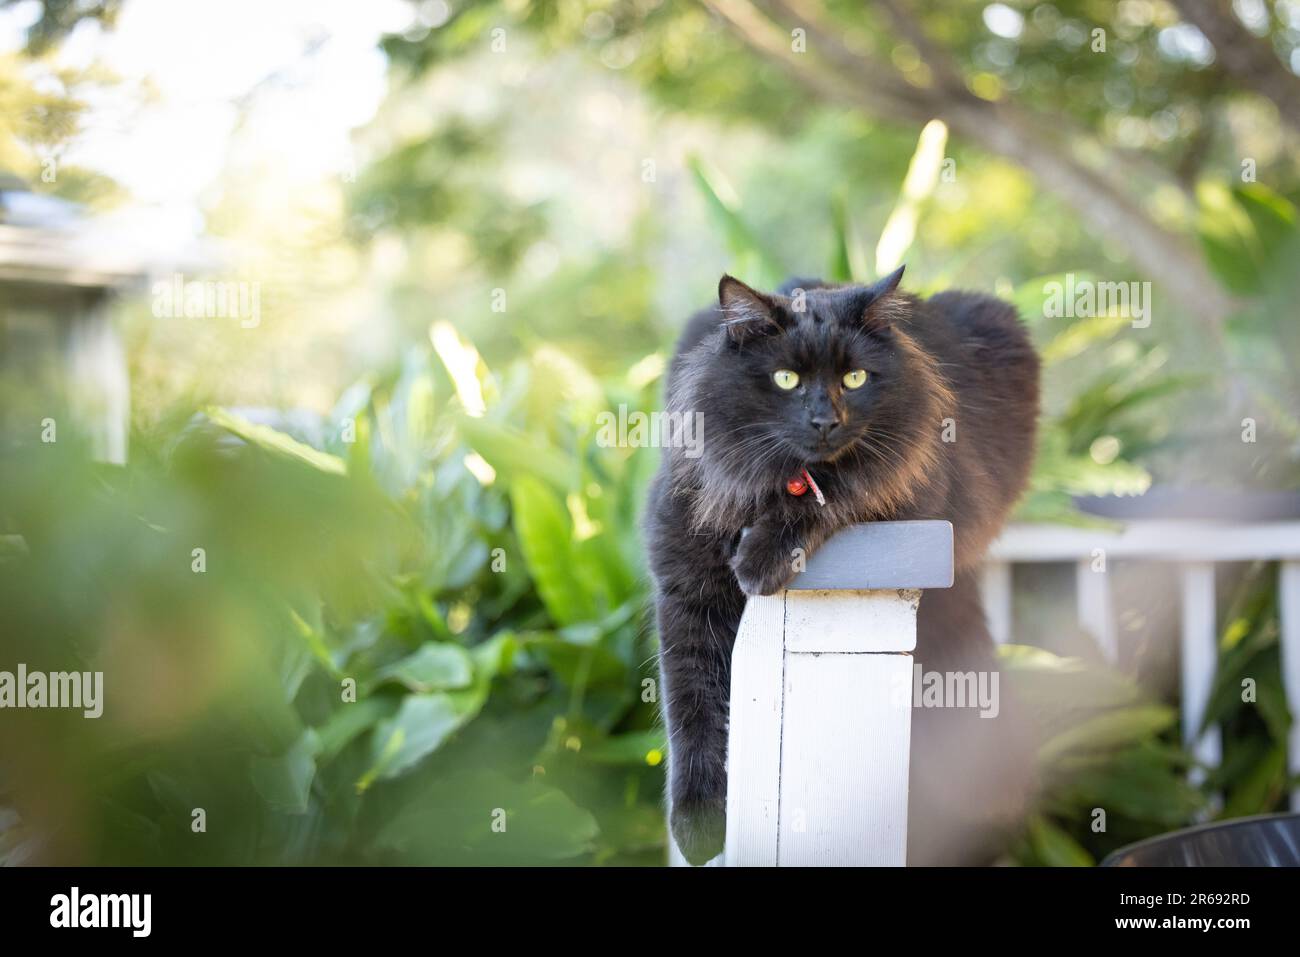 Portrait de chat noir doux se détendre sur la clôture entourée d'un jardin verdoyant Banque D'Images